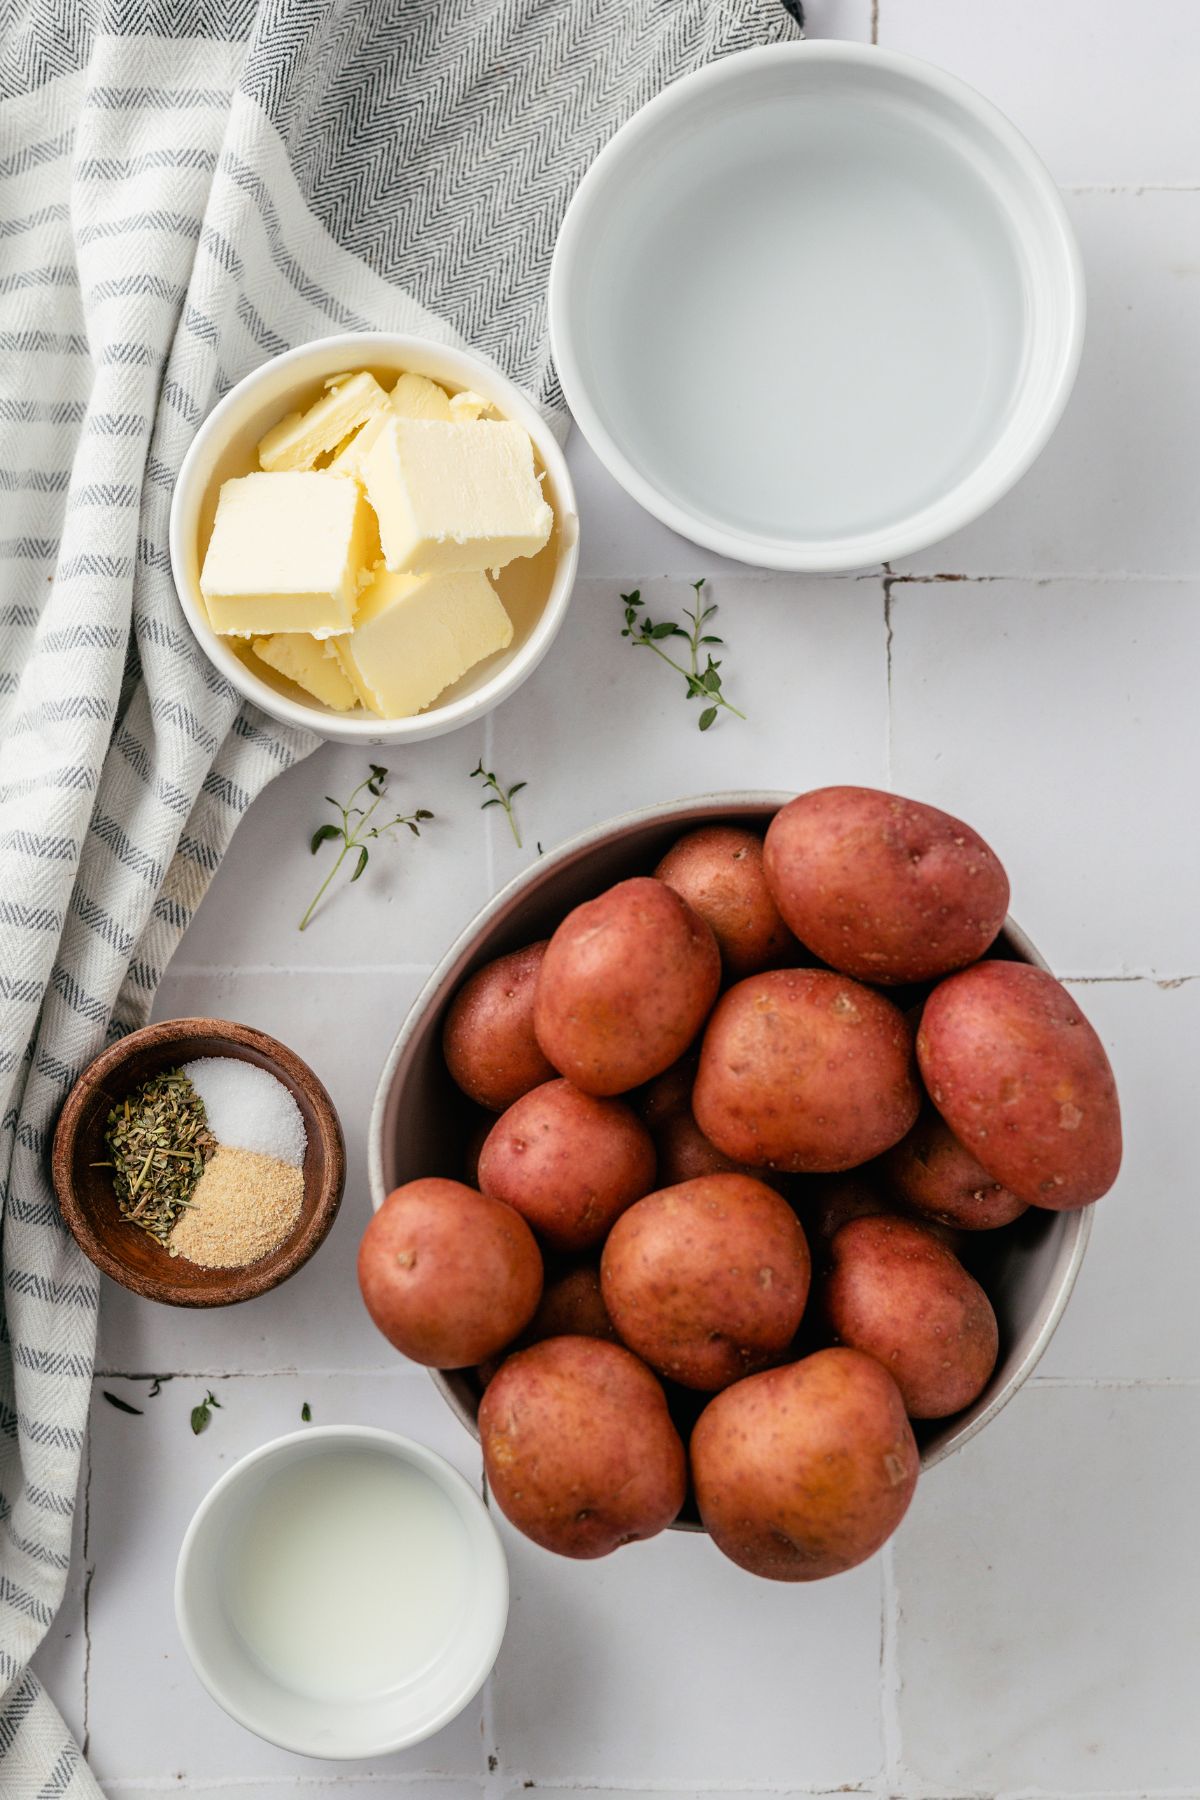 ingredients to make red skin mashed potatoes like red potatoes, butter, water, herb seasoning, milk, sea salt and garlic powder in separate bowls